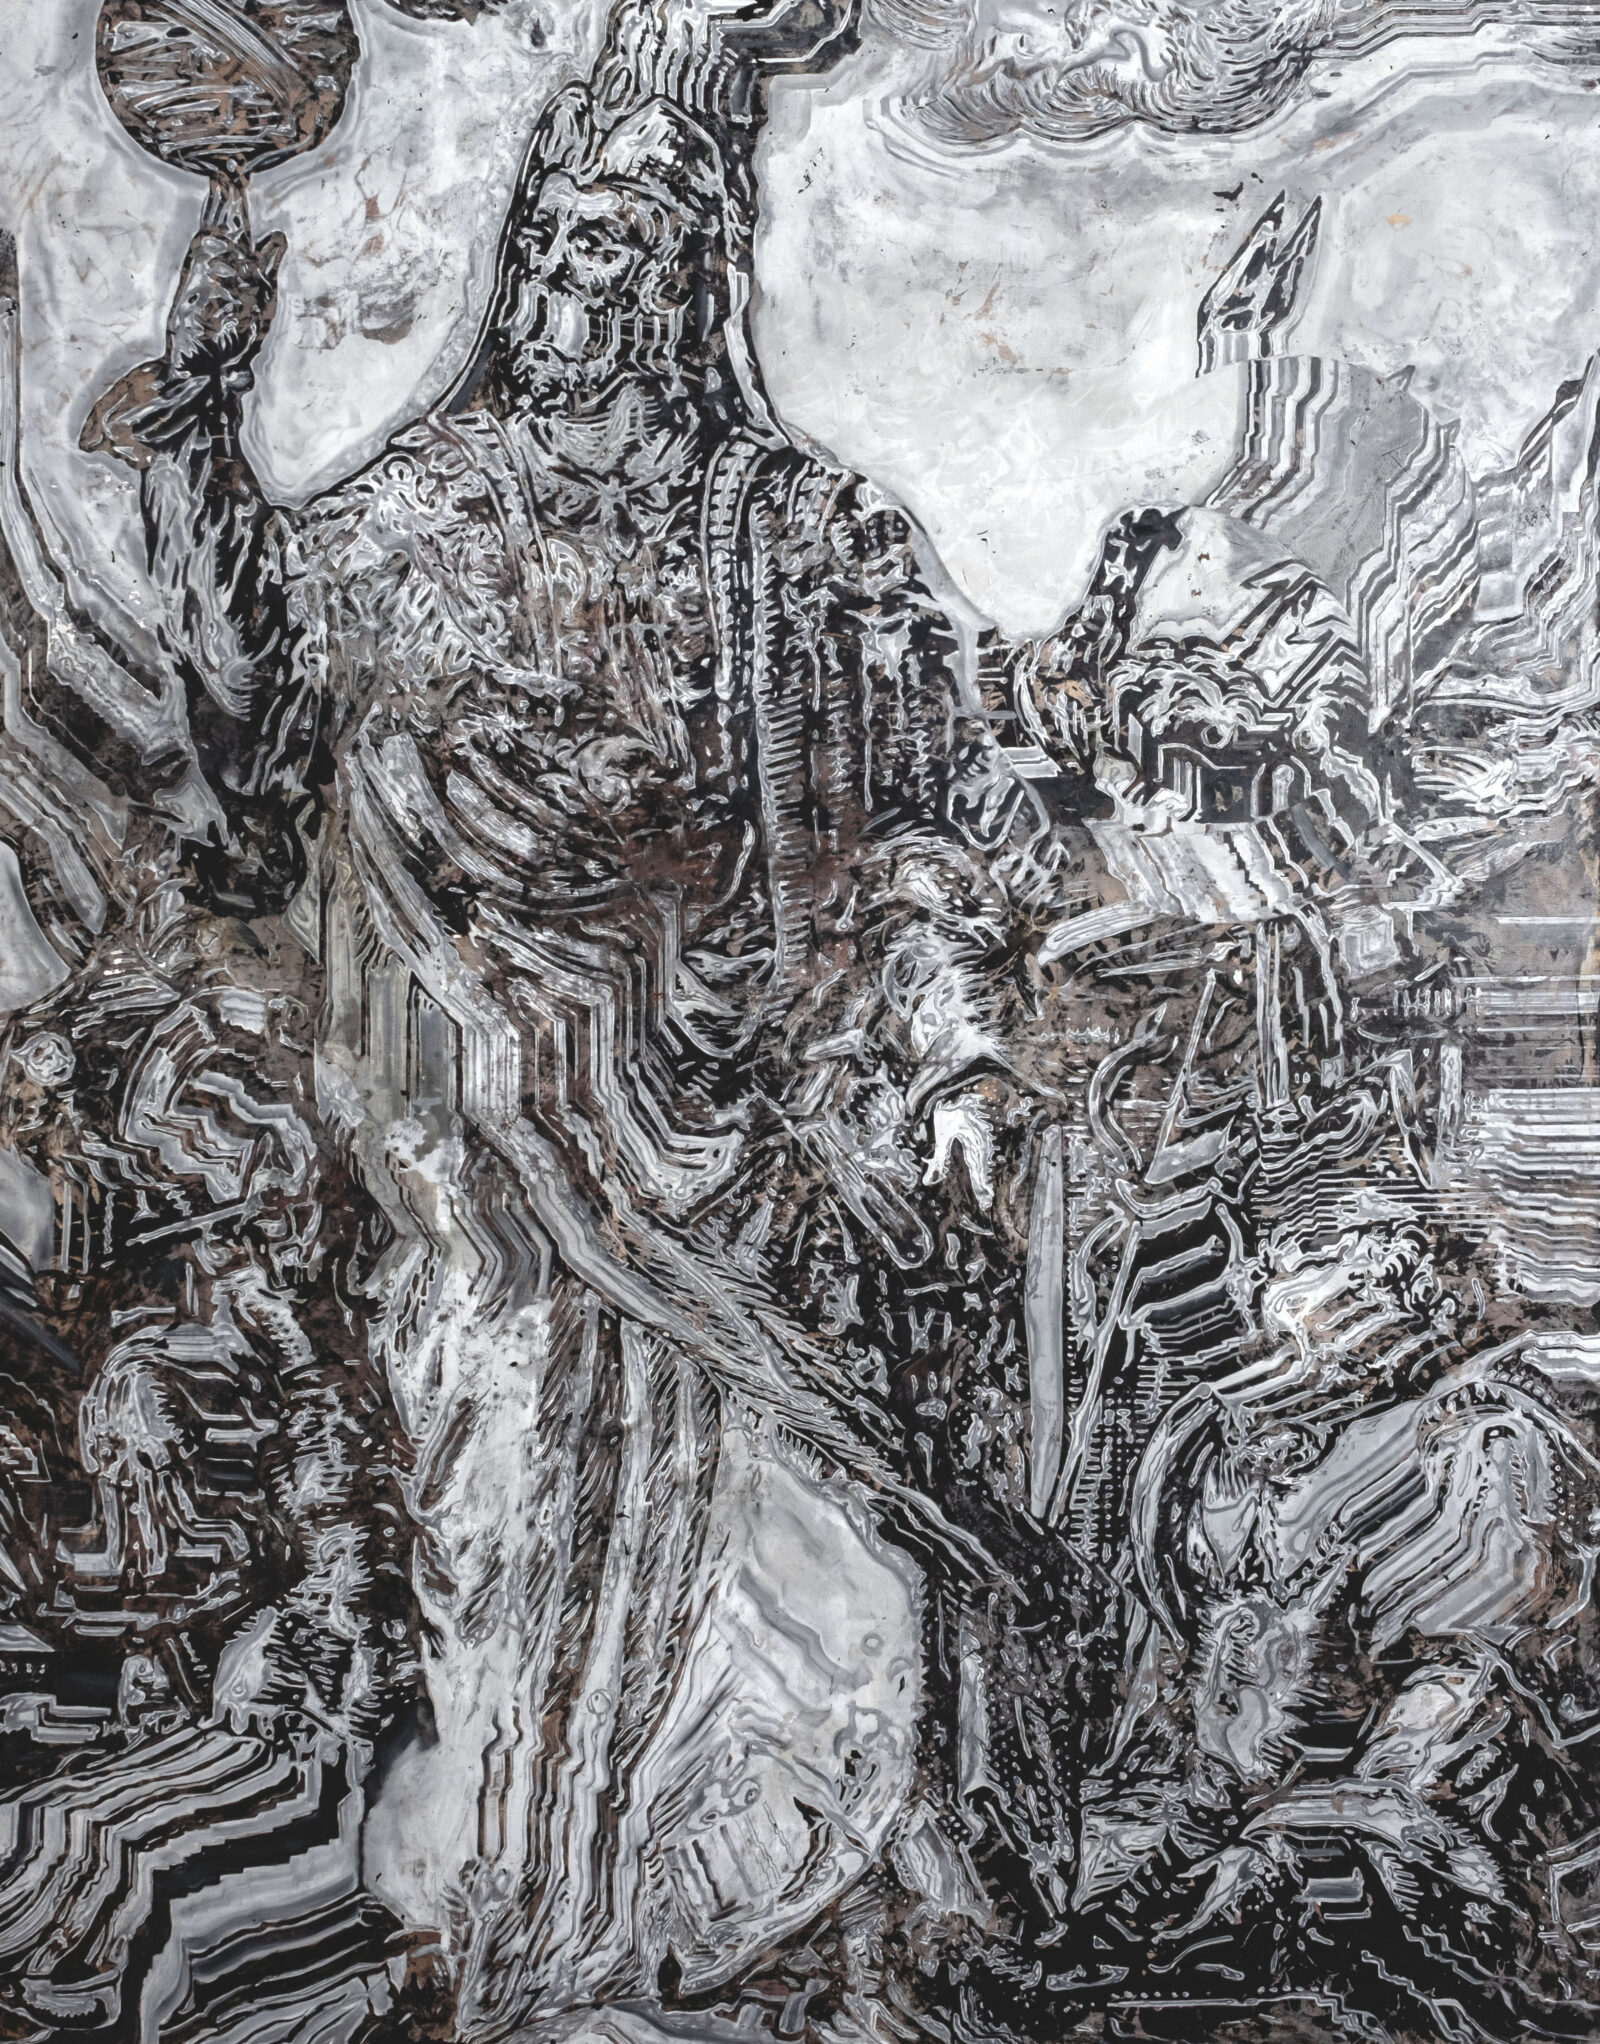 Psychopomp, oil and acrylic on canvas, 250x200cm, 2020